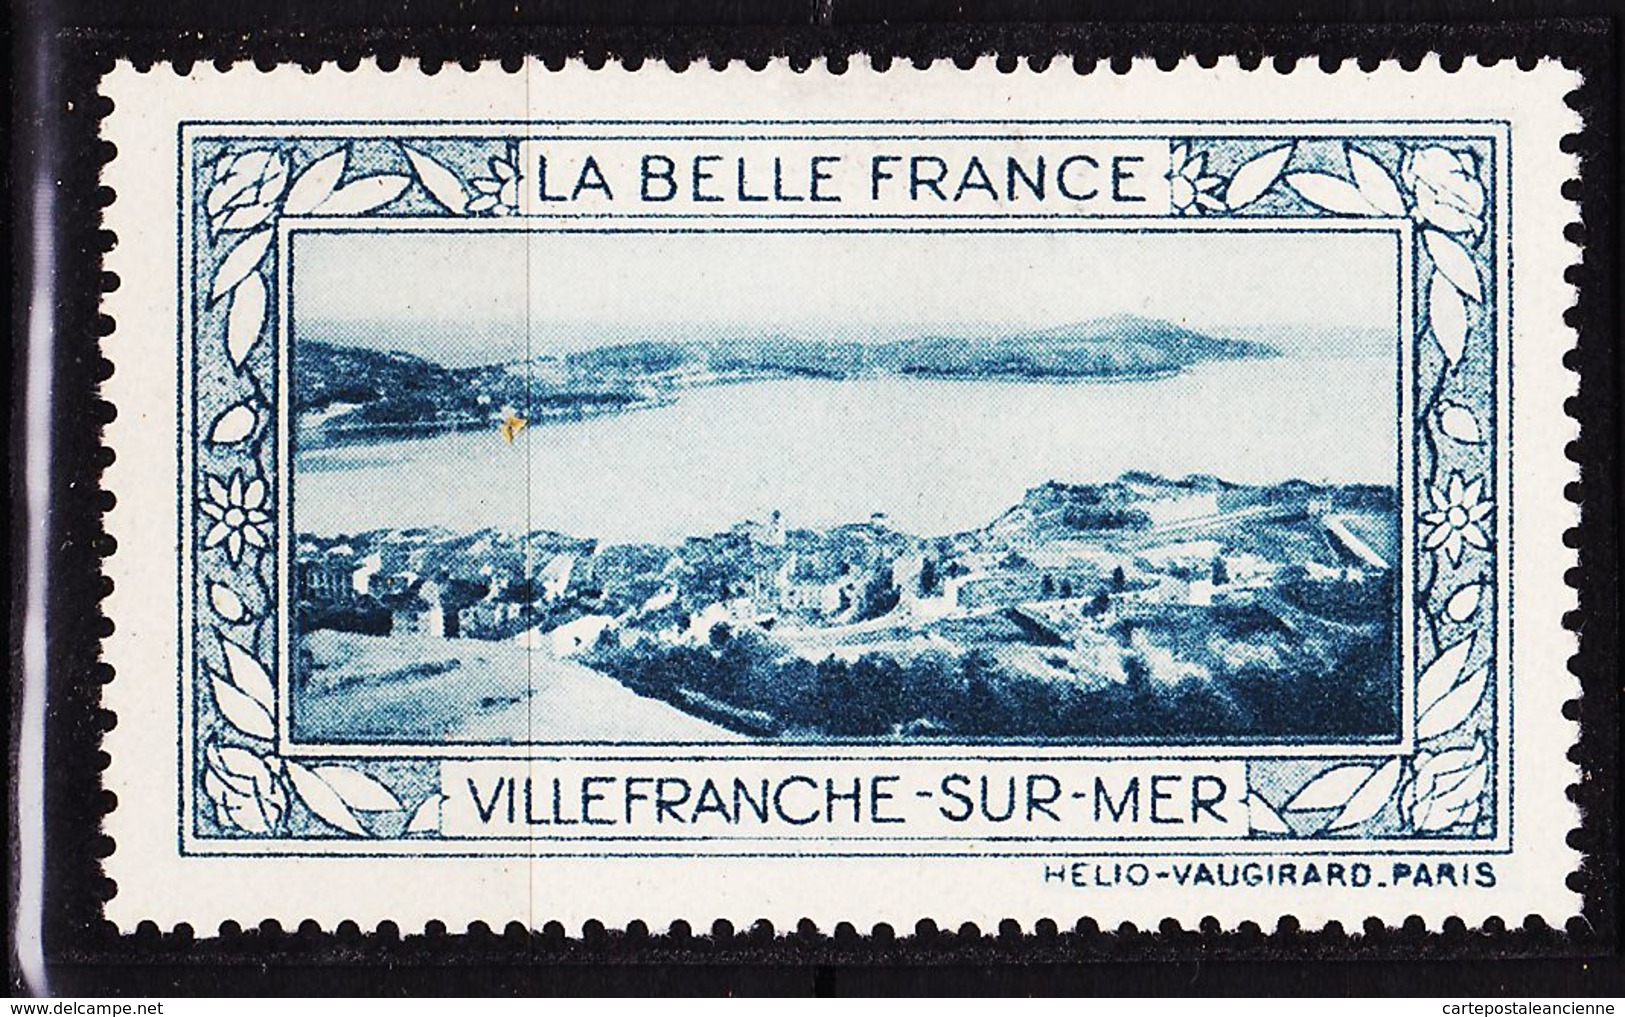 VIGN83 VILLEFRANCHE -SUR-MER Vignette De Collection LA BELLE FRANCE 1925s Helio VAUGIRARD PARIS Erinnophilie - Tourisme (Vignettes)